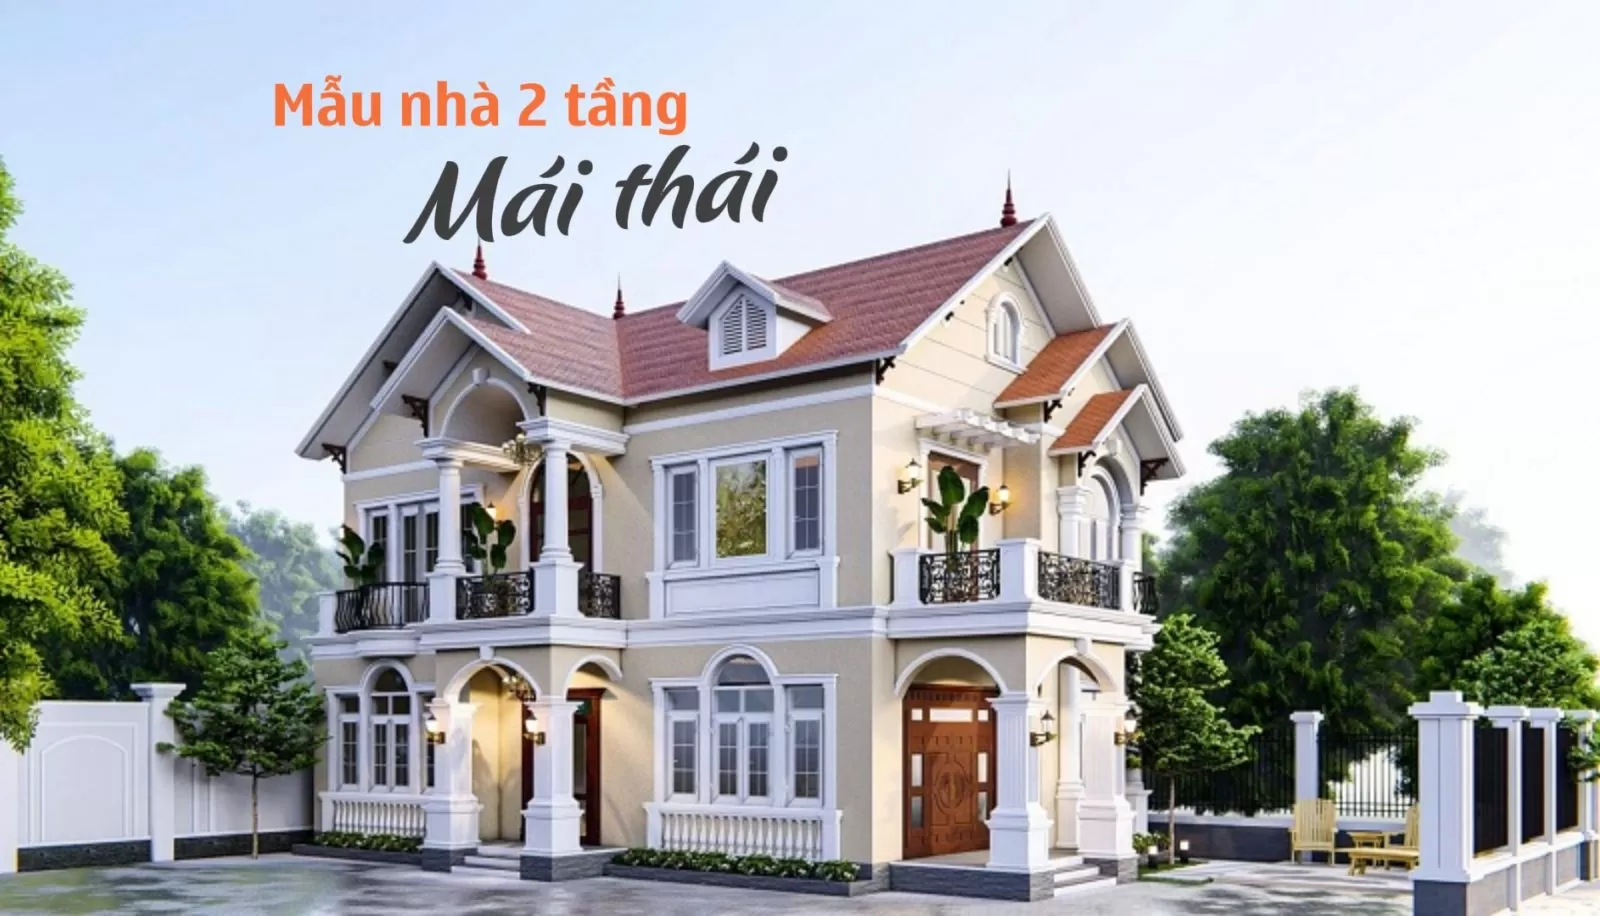 Thiết kế nhà 2 tầng mái Thái chi phí 500 triệu đồng đầy đủ công năng